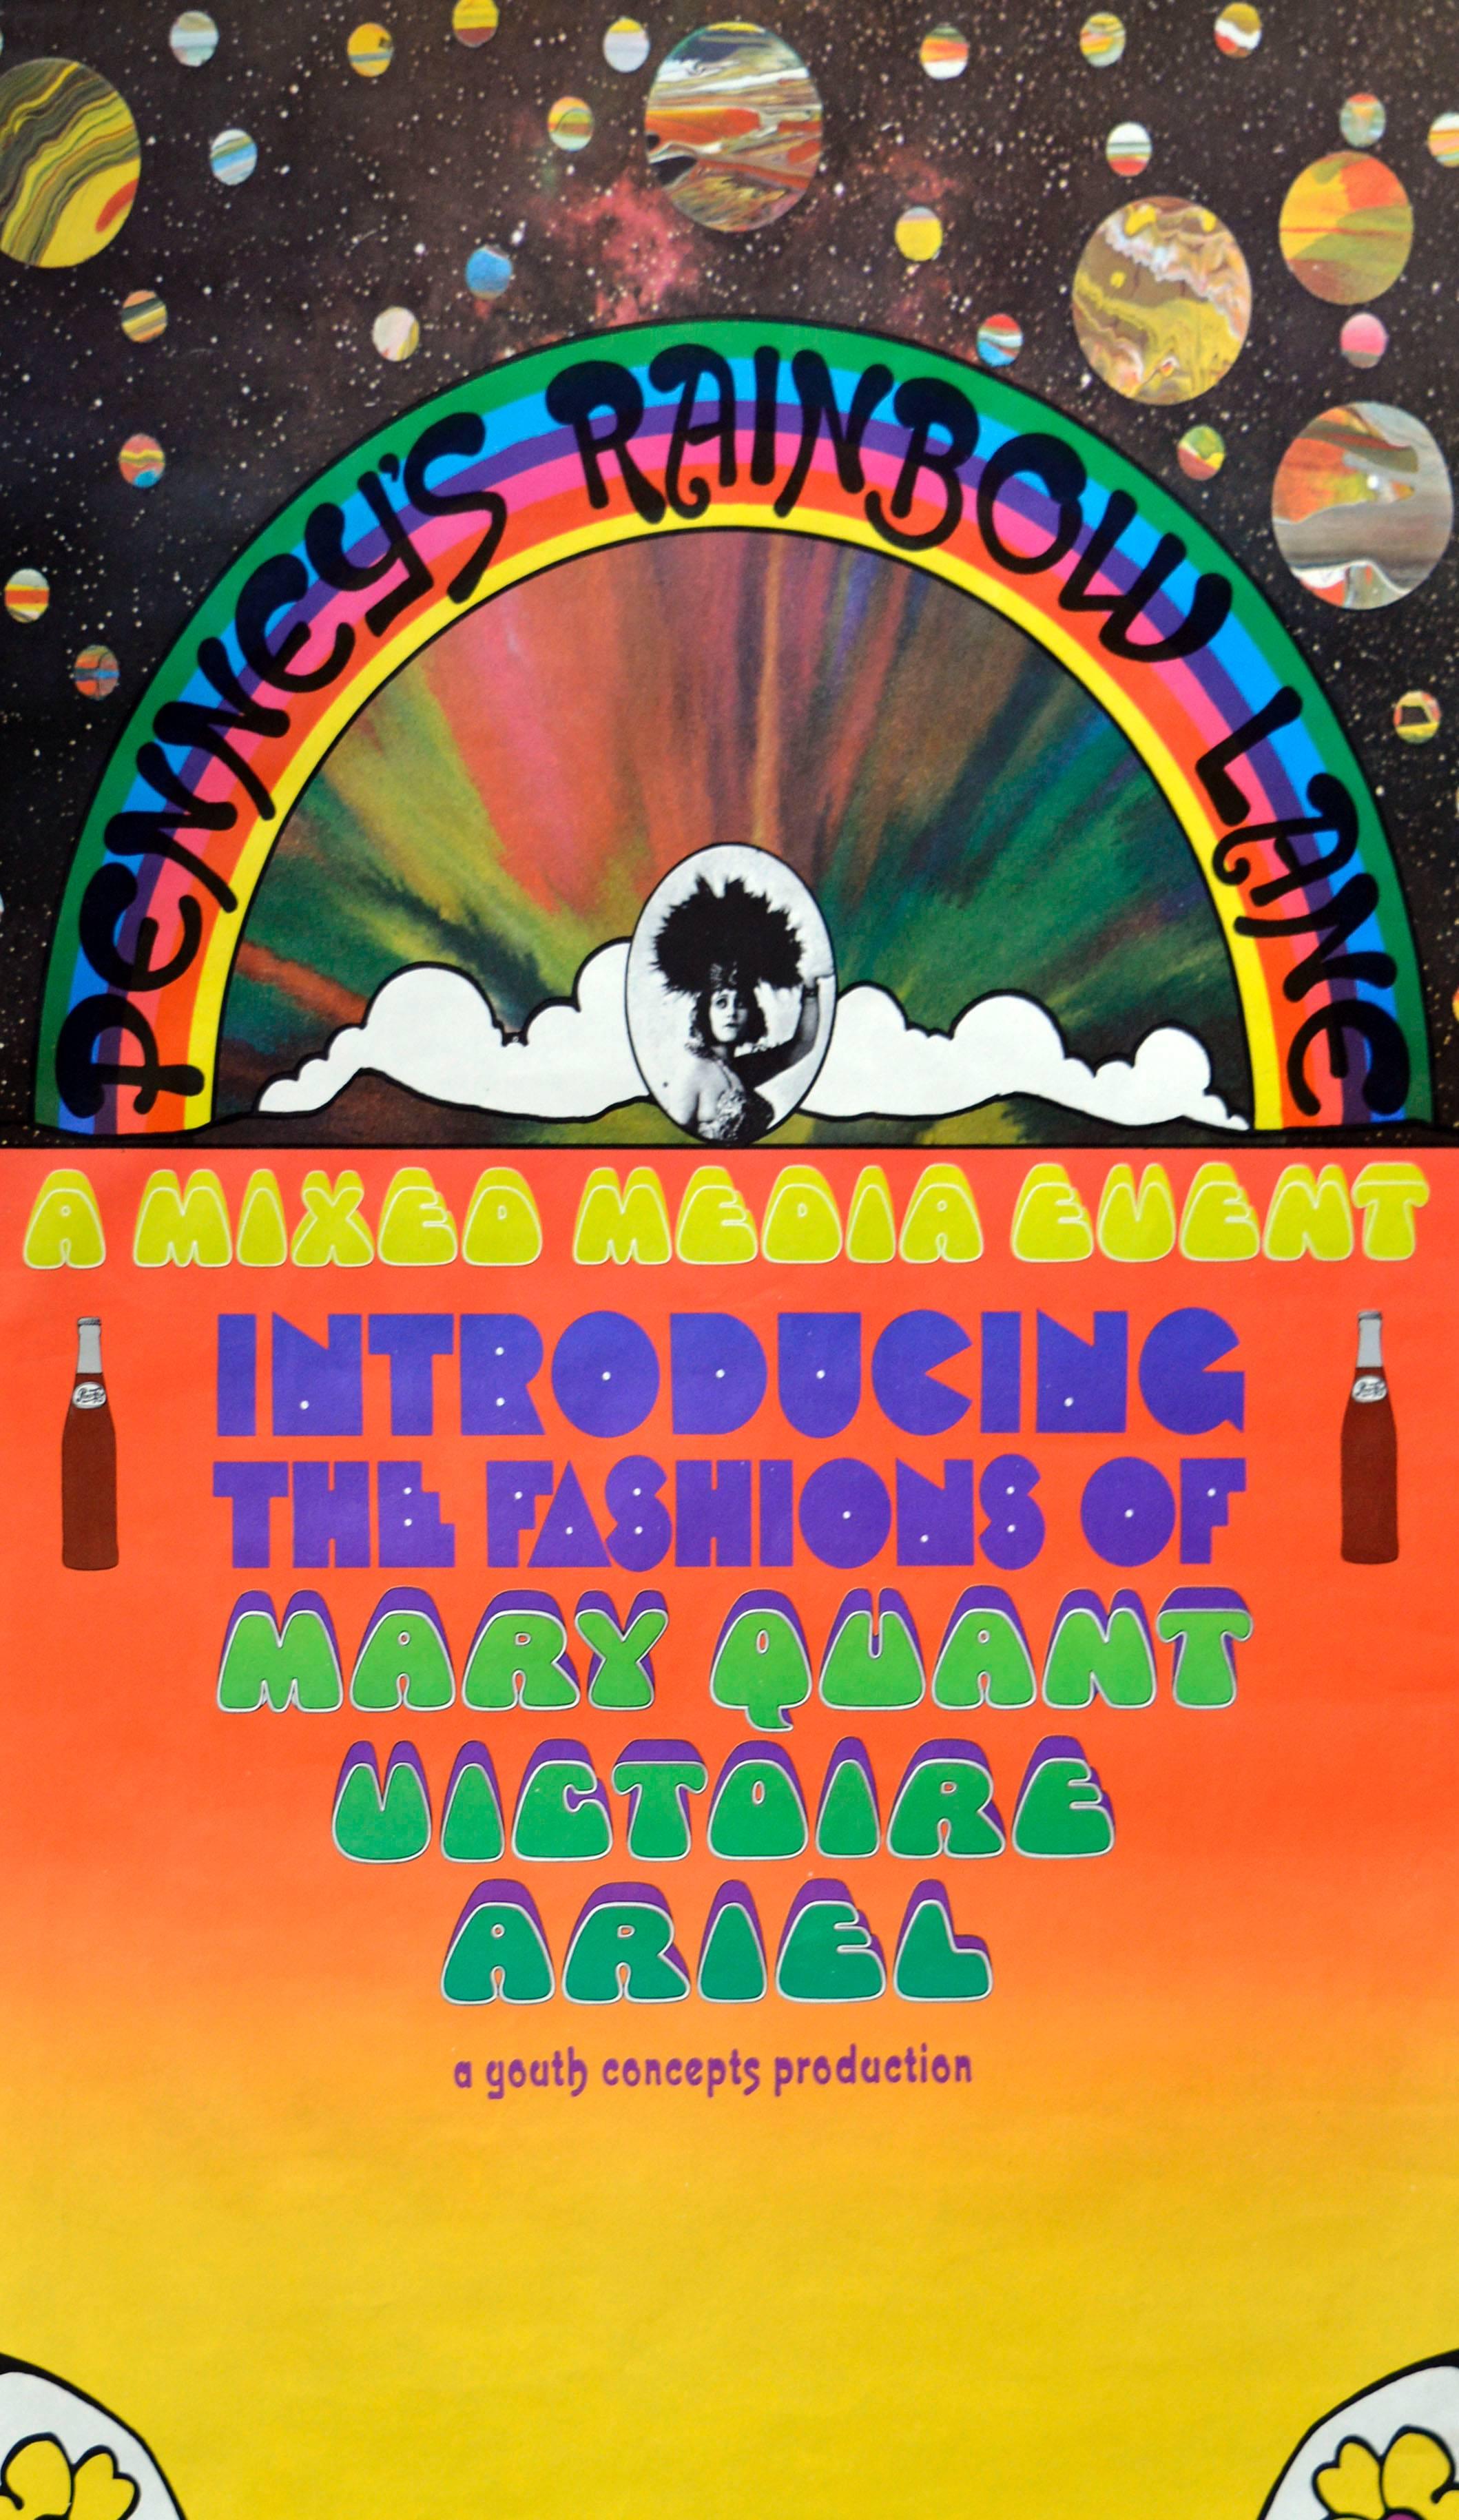 Penny's Rainbow Lane - abstraktes psychedelisches Pop-Art-Poster aus den 1960er Jahren  – Print von Peter Max